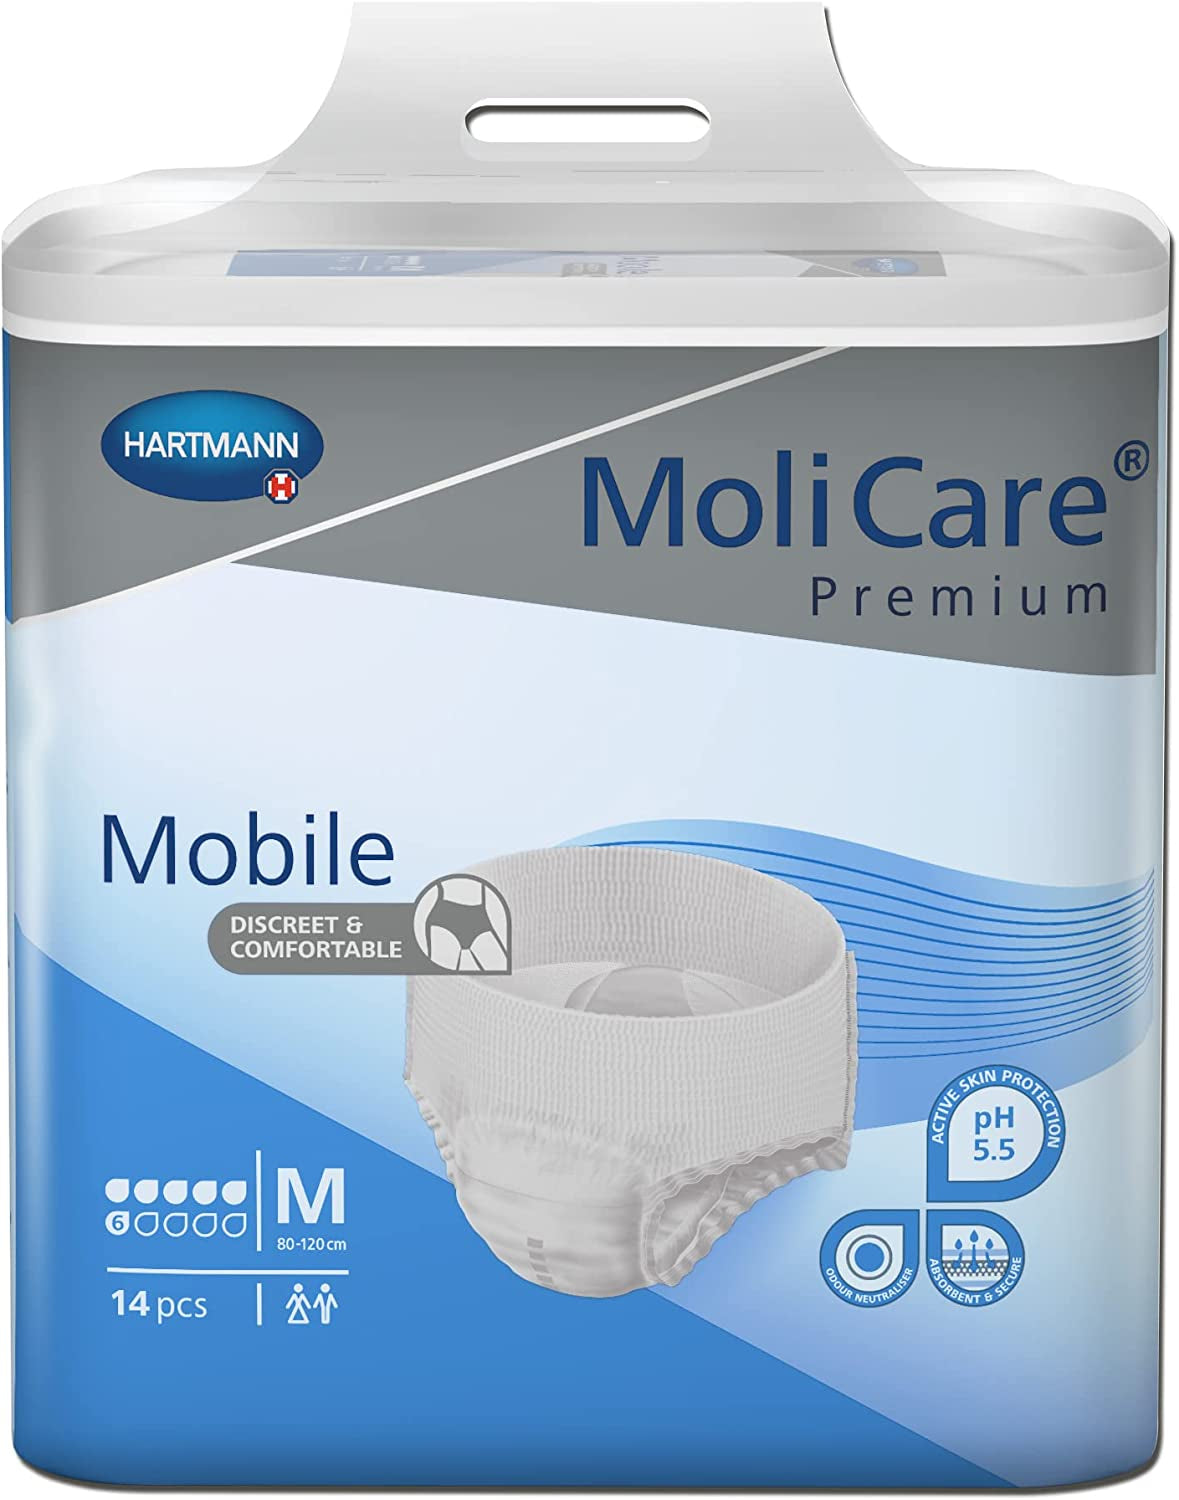 Molicare Premium Mobile Underwear, Medium, Pack/14